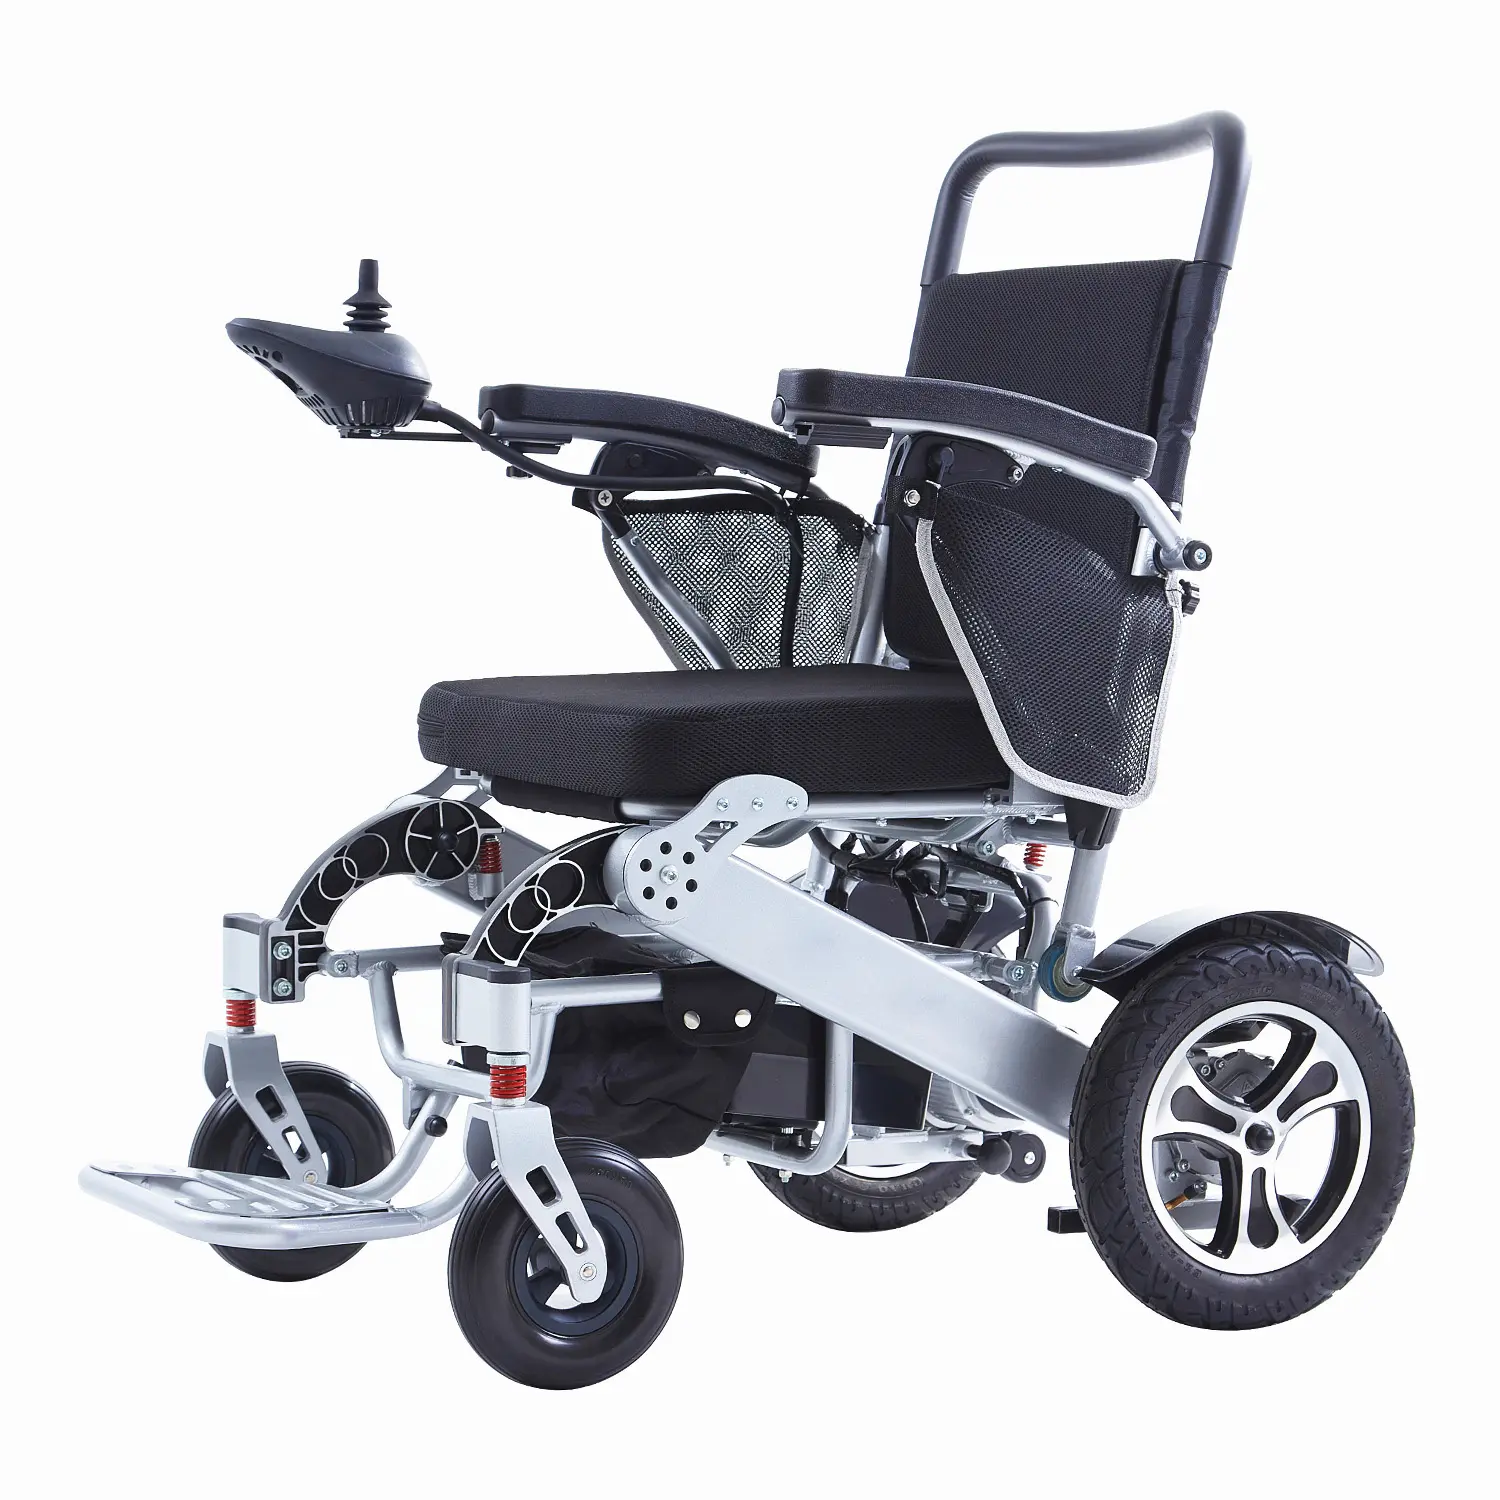 4 عجلات تعمل بالطاقة السفر الساق تتحرك الرعاية الكراسي المتحركة الكهربائية سعر المصنع الكهربائية كرسي متحرك سكوتر كهربائي كرسي متحرك